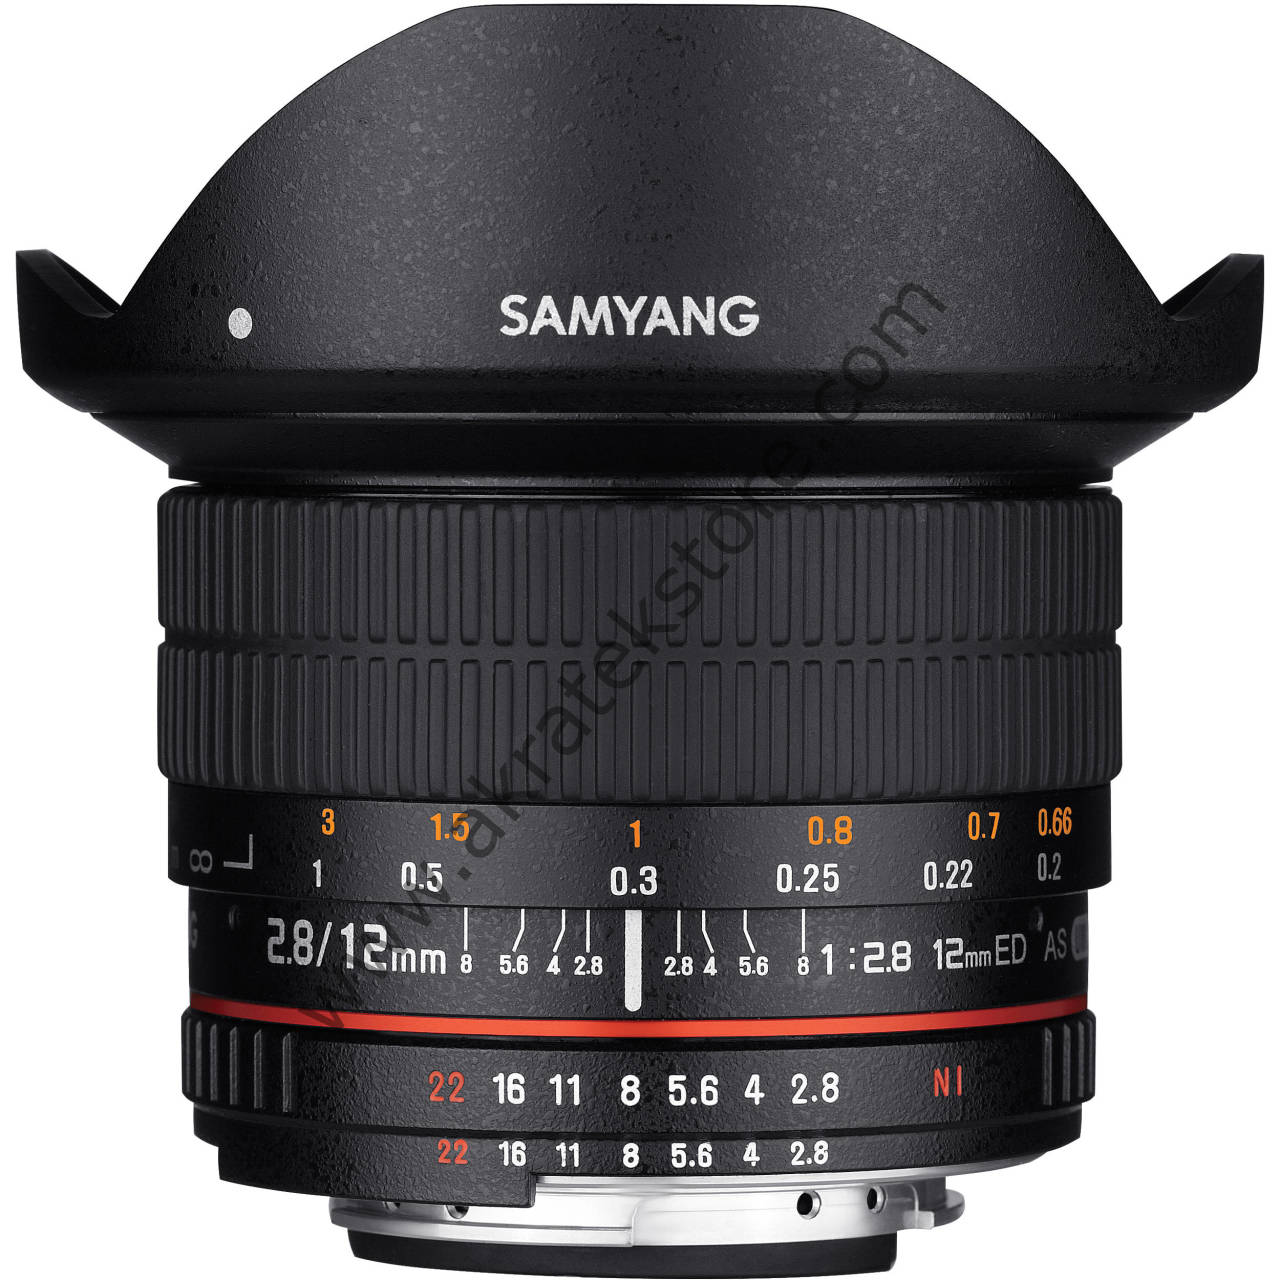 Samyang 12mm F:2.8 F mount